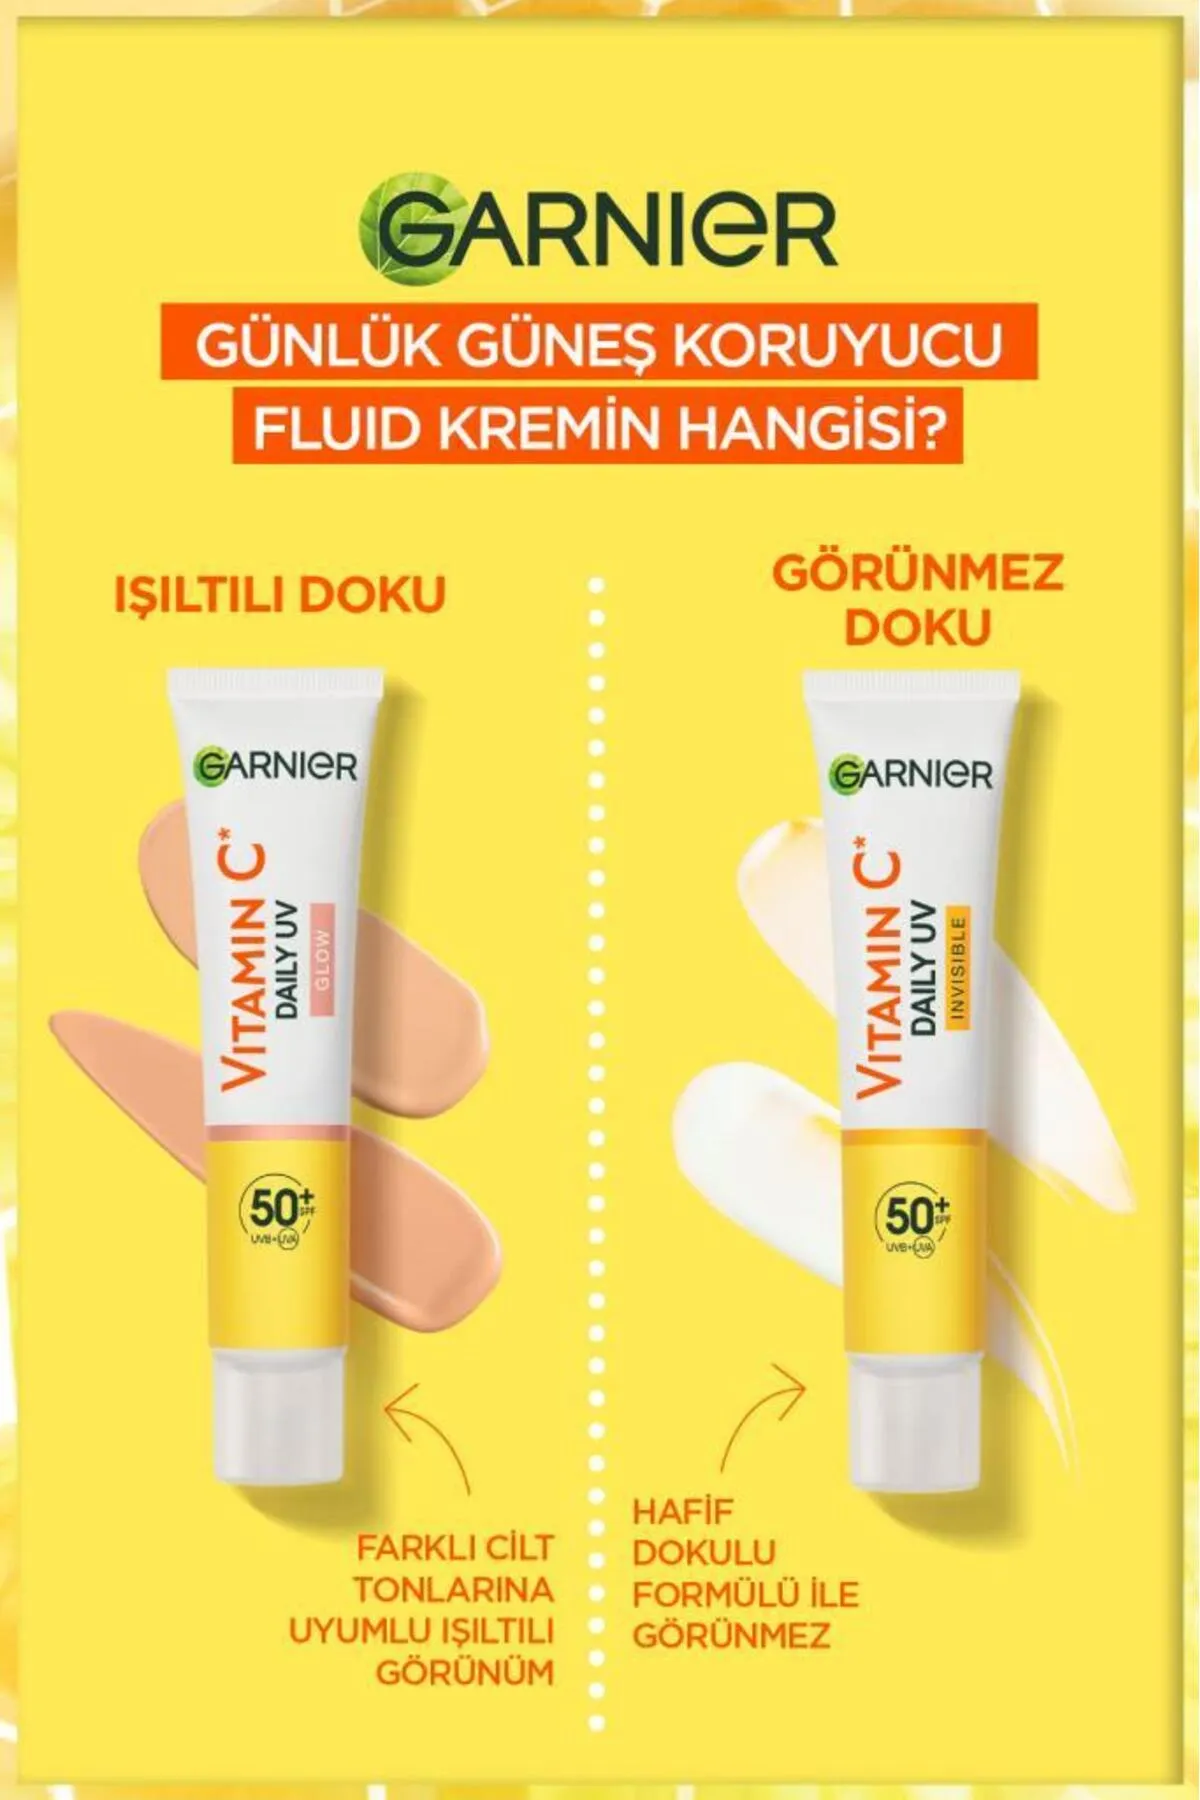 Garnier C Vitamini Parlak Görünmez Doku Günlük Güneş Koruyucu Fluid Yüz Kremi 40 ml - Thumbnail